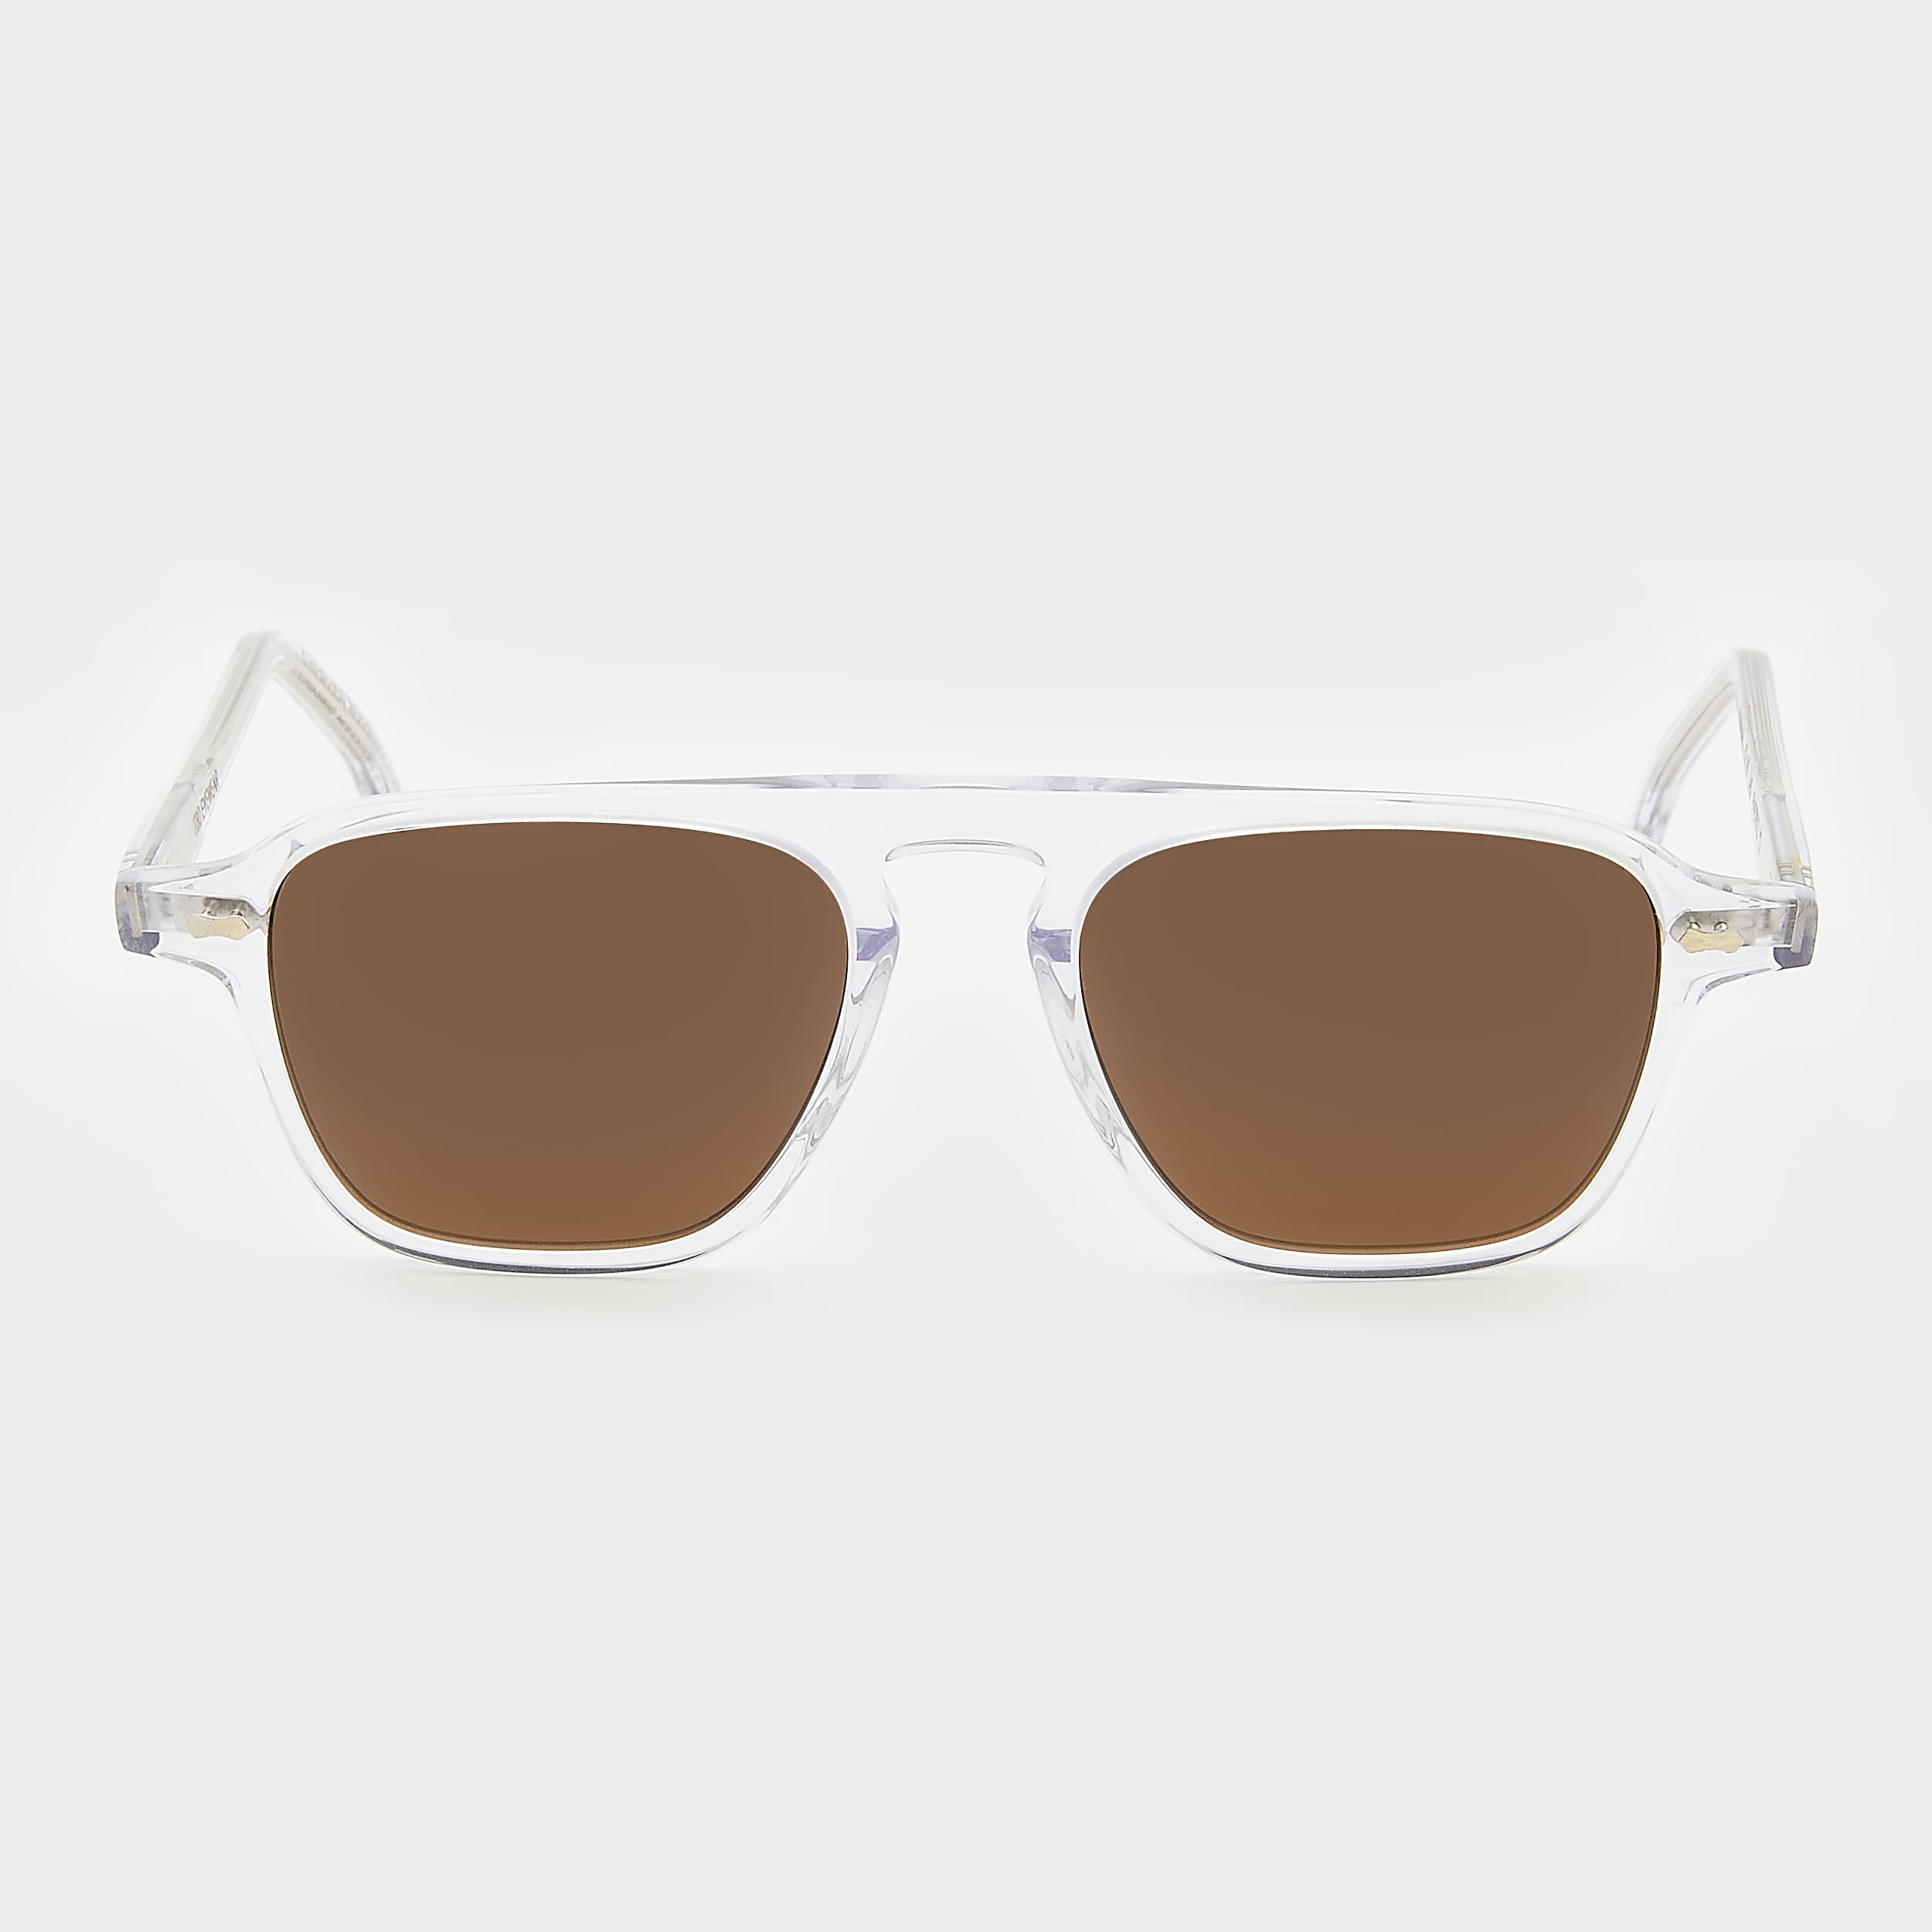 sunglasses-panama-eco-transparent-tobacco-sustainable-tbd-eyewear-front